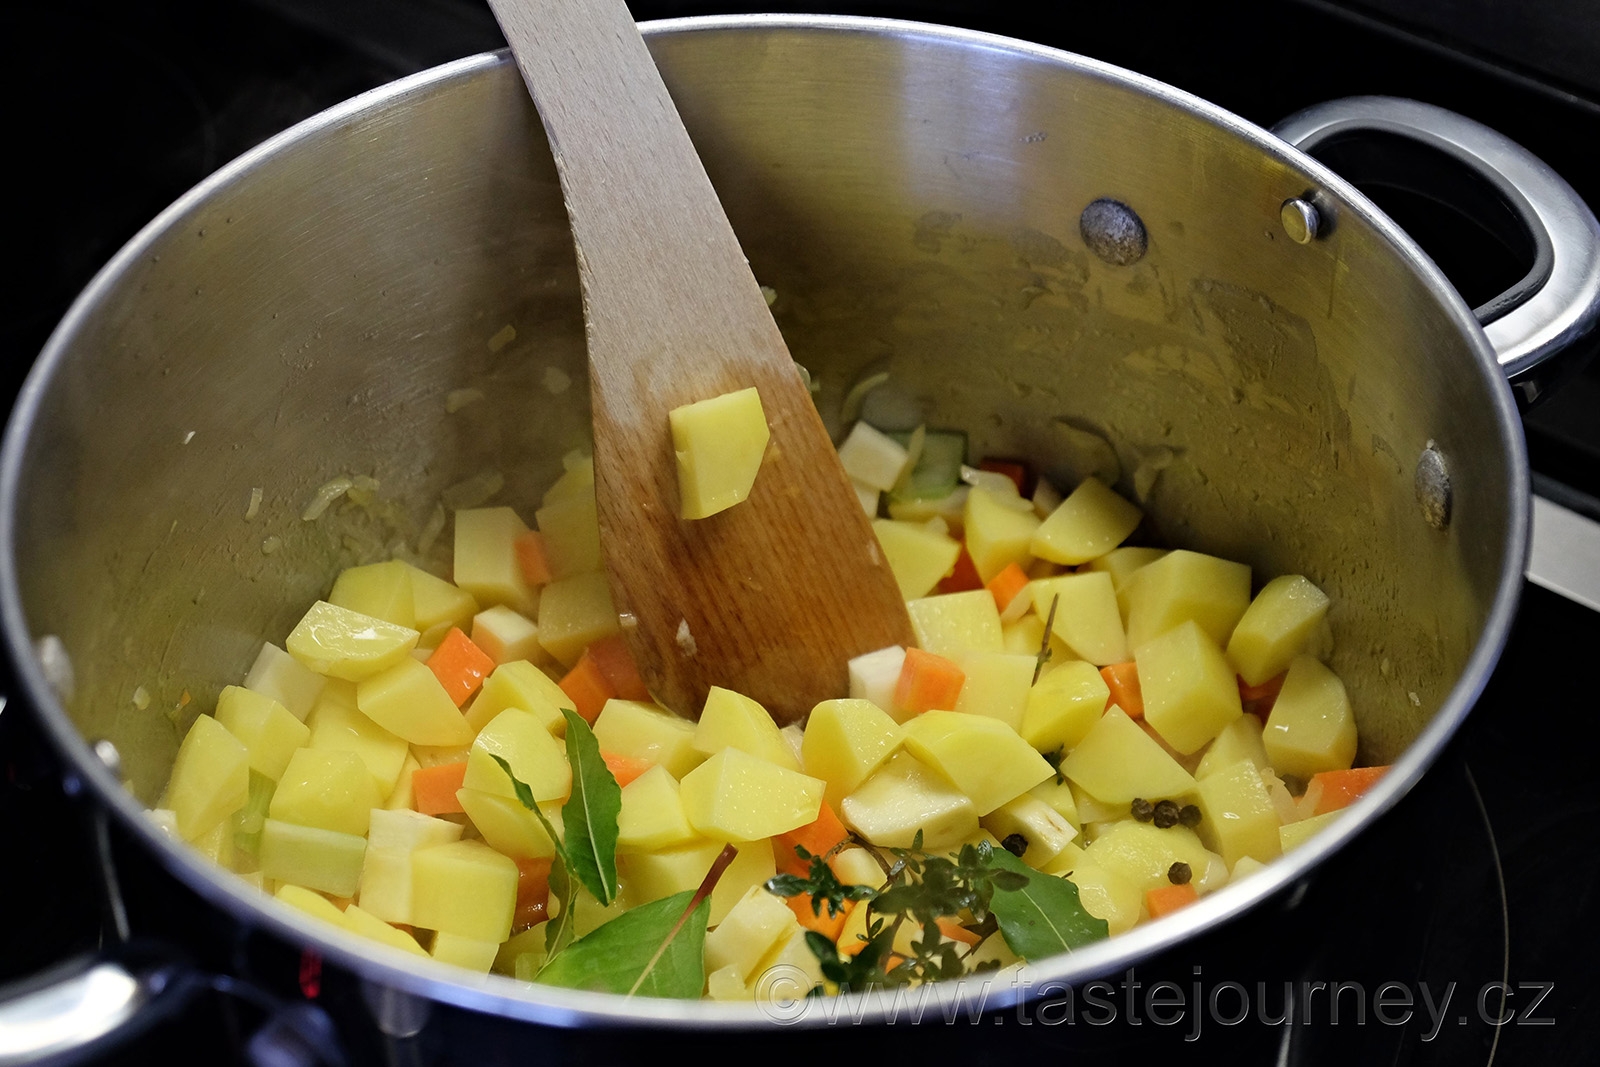 Zeleninu je dobré osmahnout na másle a přidat brambory